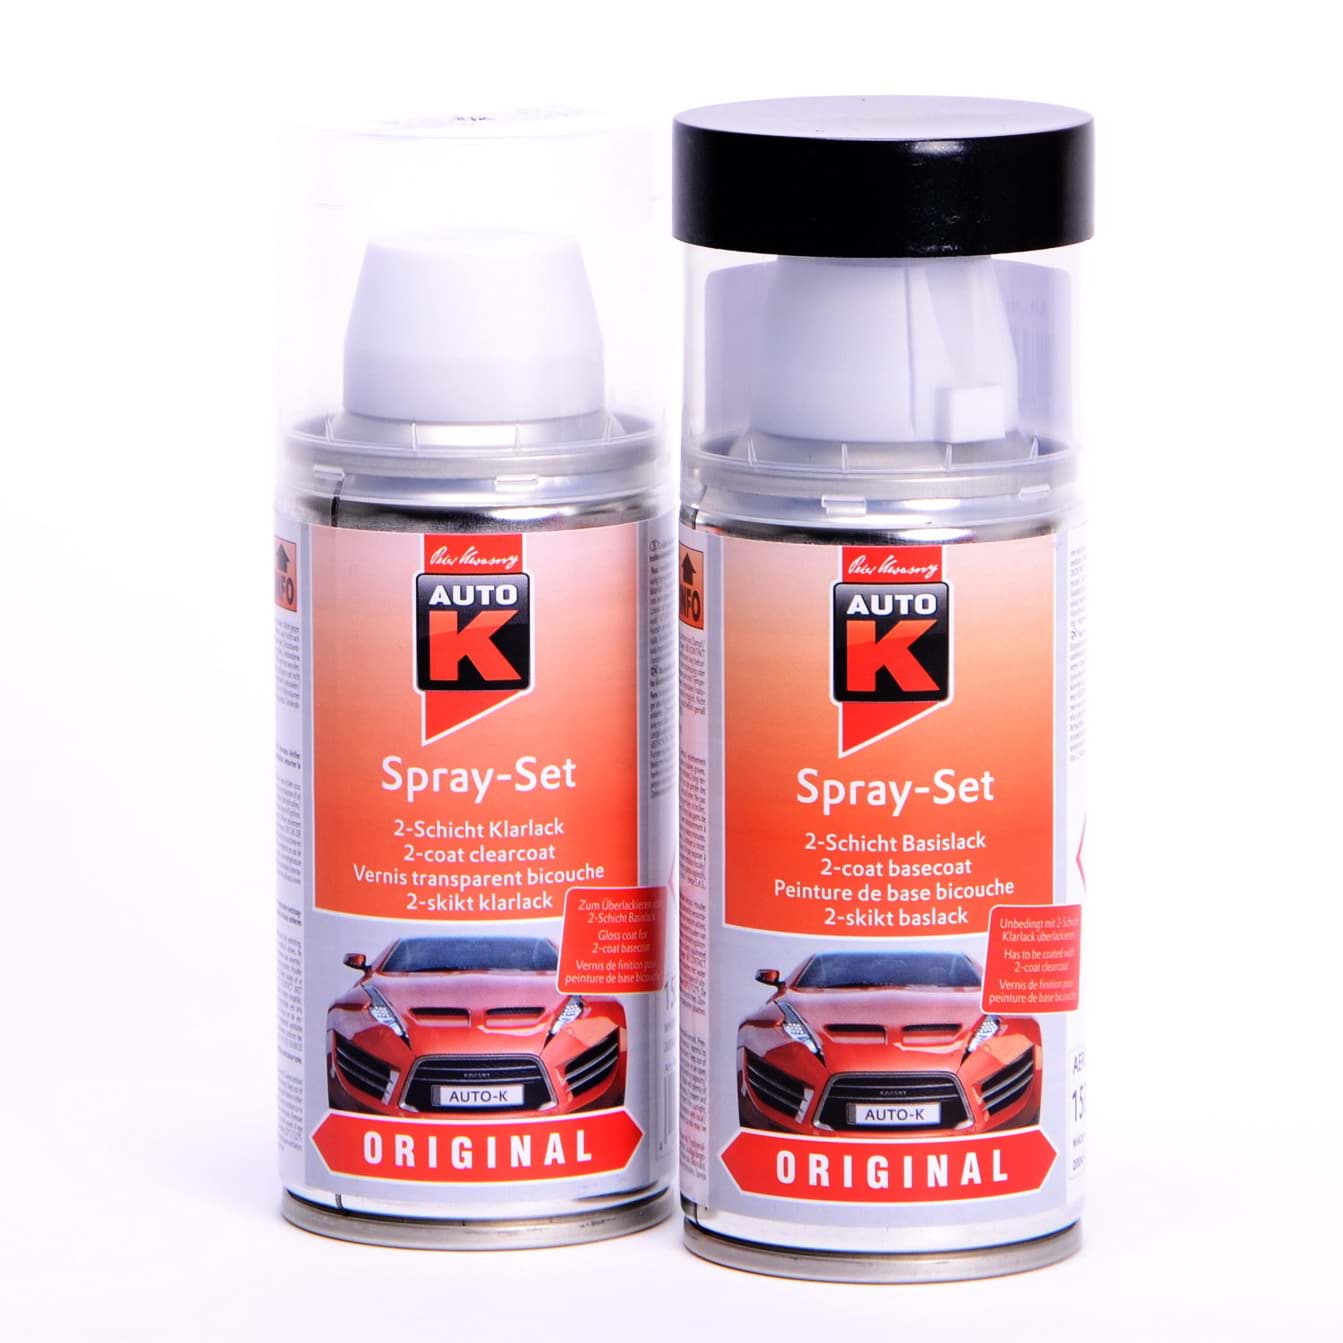 Afbeelding van Auto-K Spray-Set Autolack für Volkswagen, VW, Audi L902 Grauweiss 20733